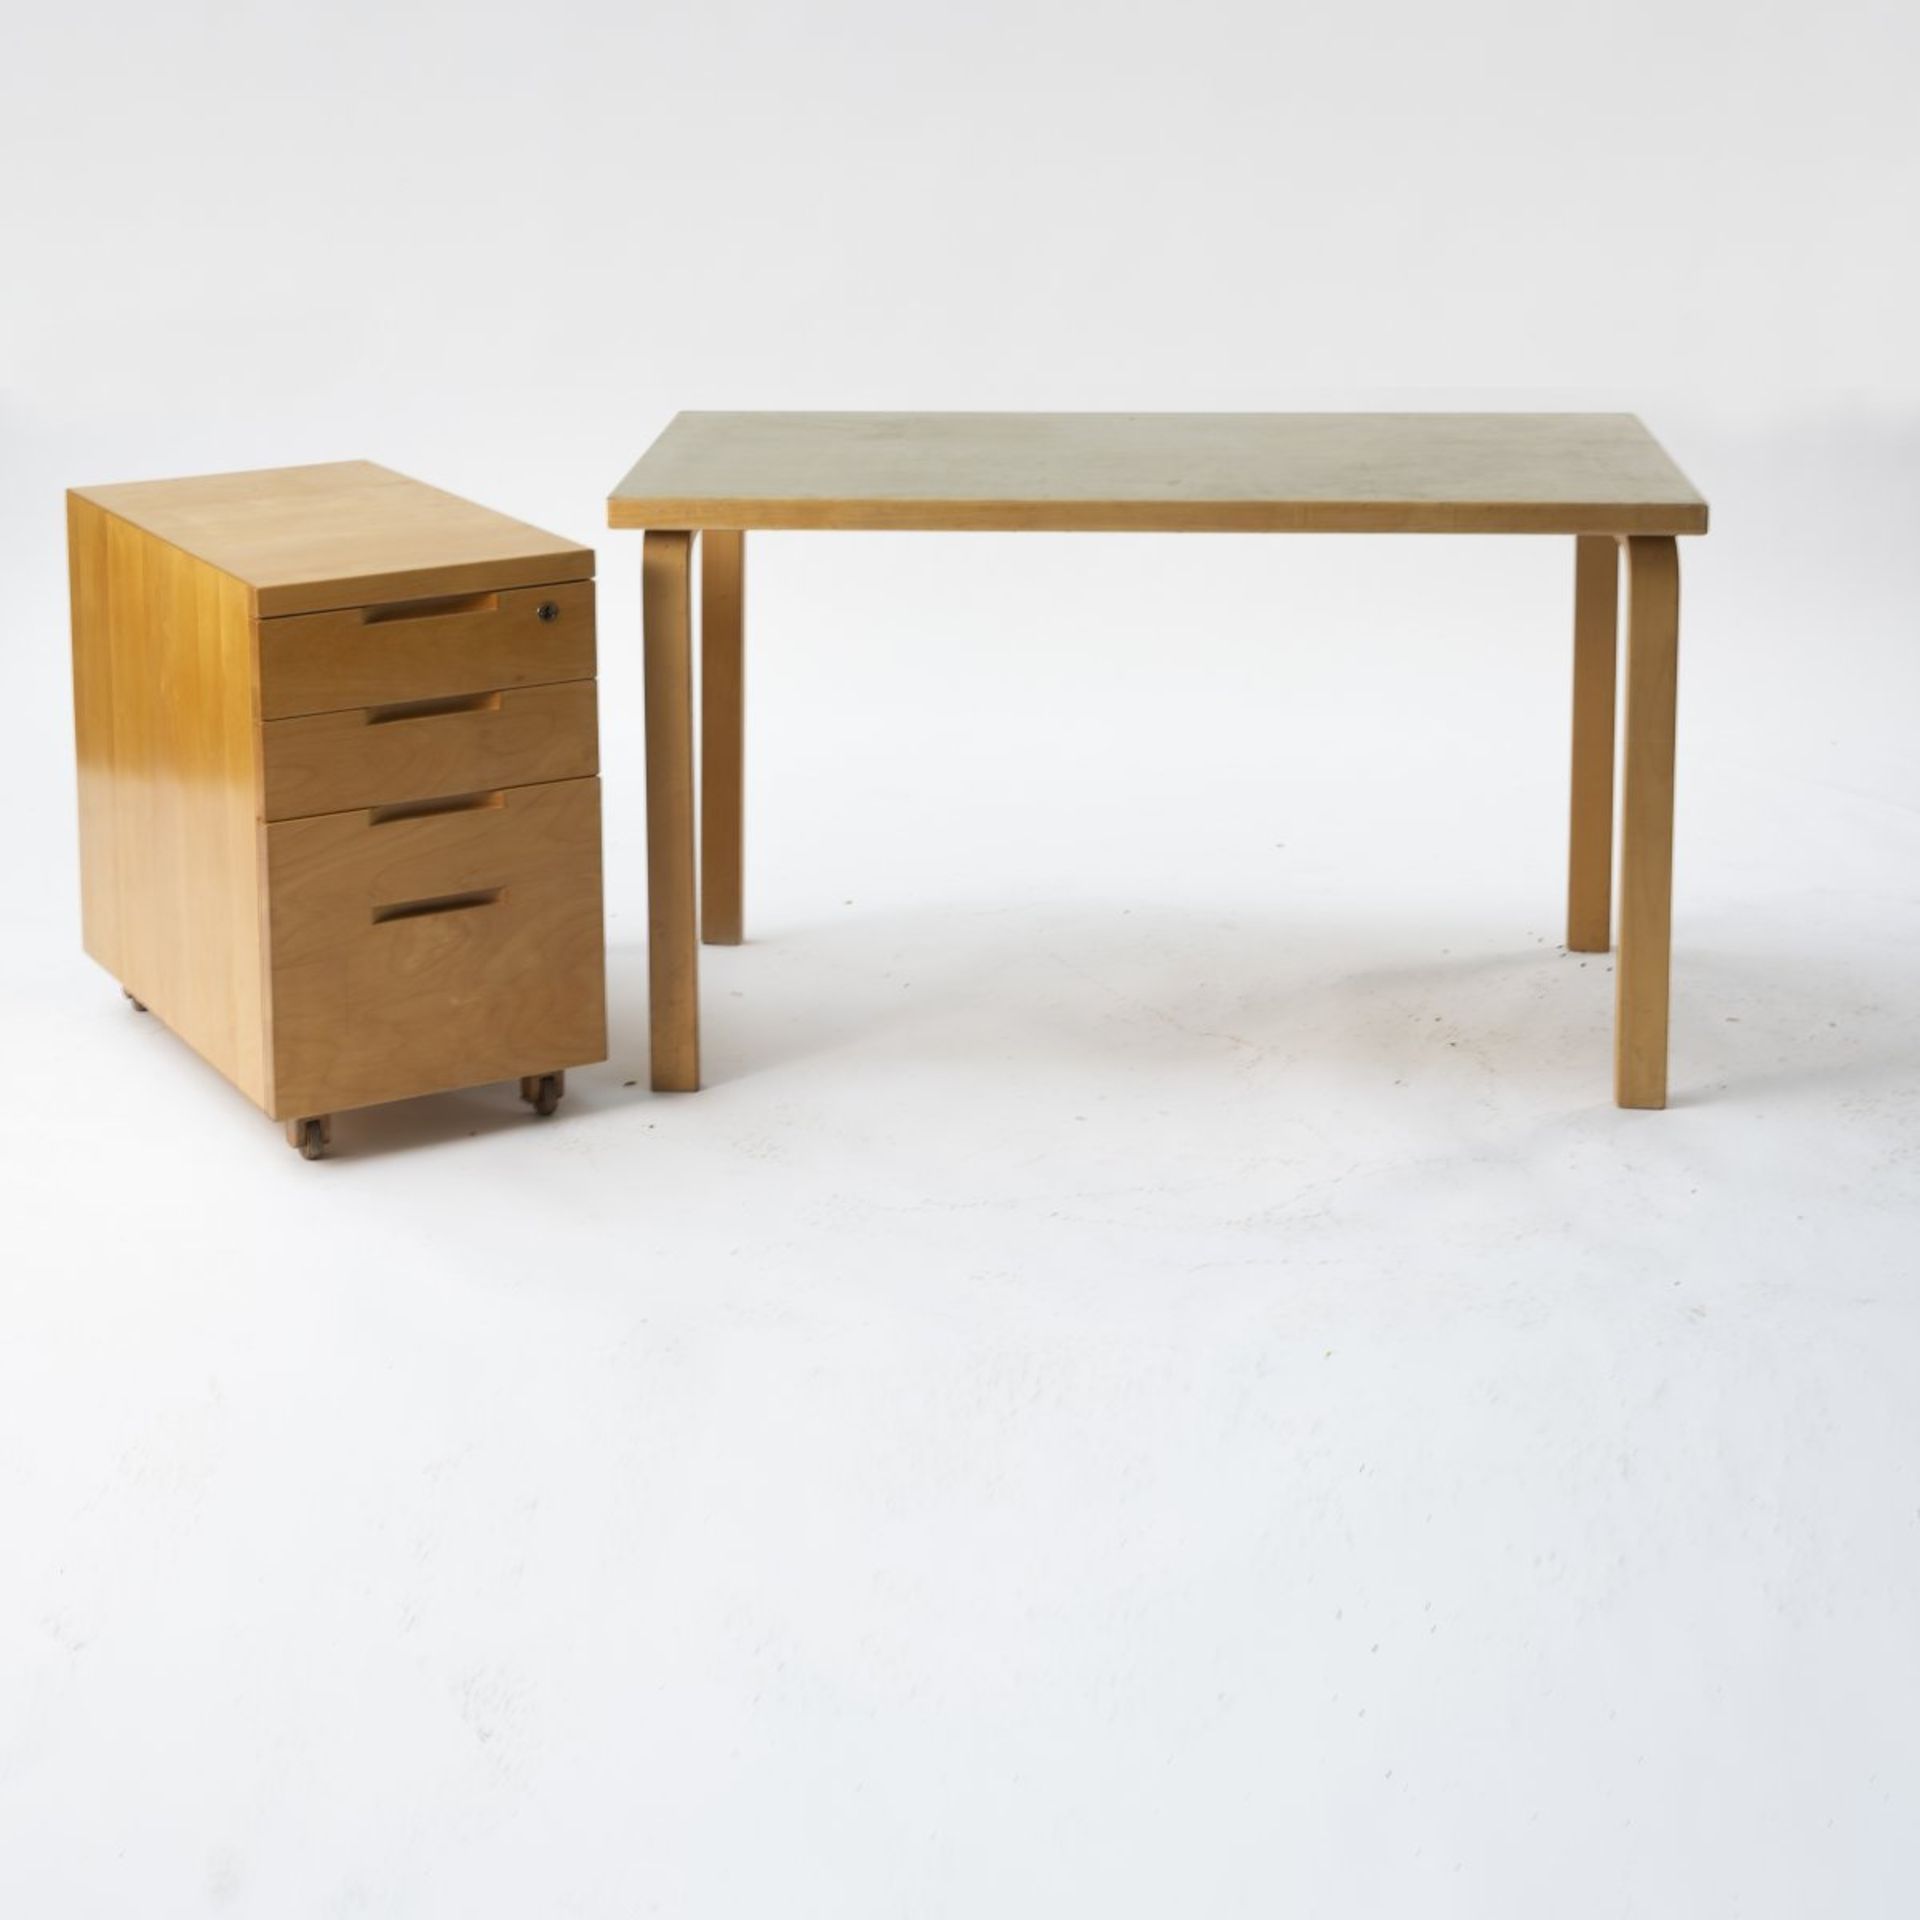 Alvar Aalto, Tisch 'L-leg' mit Rollcontainer, 1930er JahreTisch 'L-leg' mit Rollcontainer, 1930er - Image 2 of 3